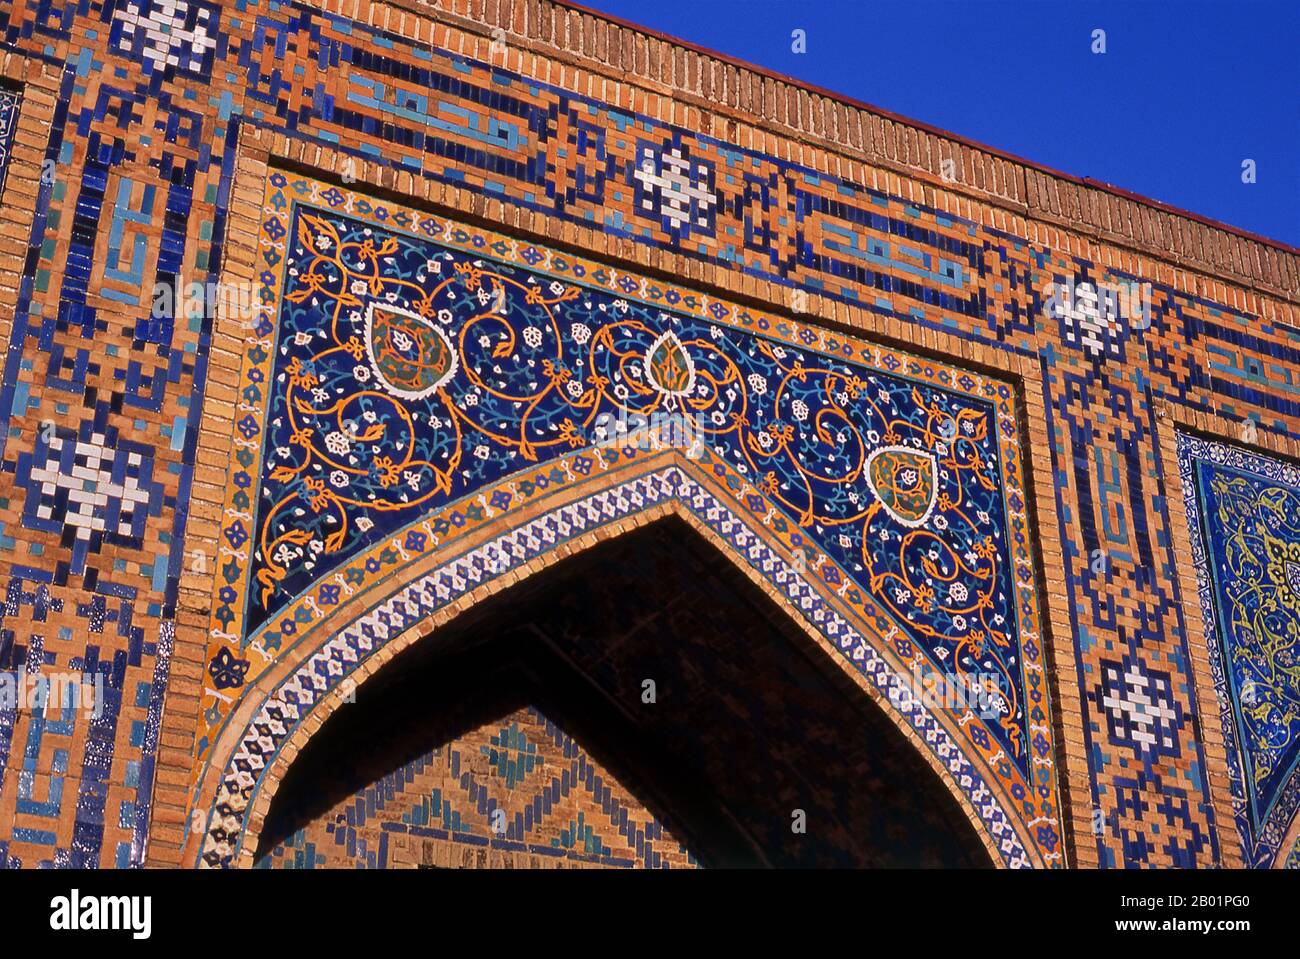 Uzbekistan: Intricate decorazioni arabesche nel cortile interno di Tillya Kari Madrassa, Registan, Samarcanda. Il Registan contiene tre madrasa (scuole), la Madrasa Ulugh Beg (1417-1420), la Madrasa Tilya-Kori (1646-1660) e la Madrasa Sher-Dor (1619-1636). La Madrasa Tilya-Kori fu costruita a metà del XVII secolo dallo Shaybanide Amir Yalangtush. Il nome Tilya-Kori significa «dorato» o «ricoperto d’oro» e l’intero edificio è riccamente decorato con elaborati arabeschi geometrici e sura del Corano, sia all’esterno che soprattutto all’interno. Foto Stock